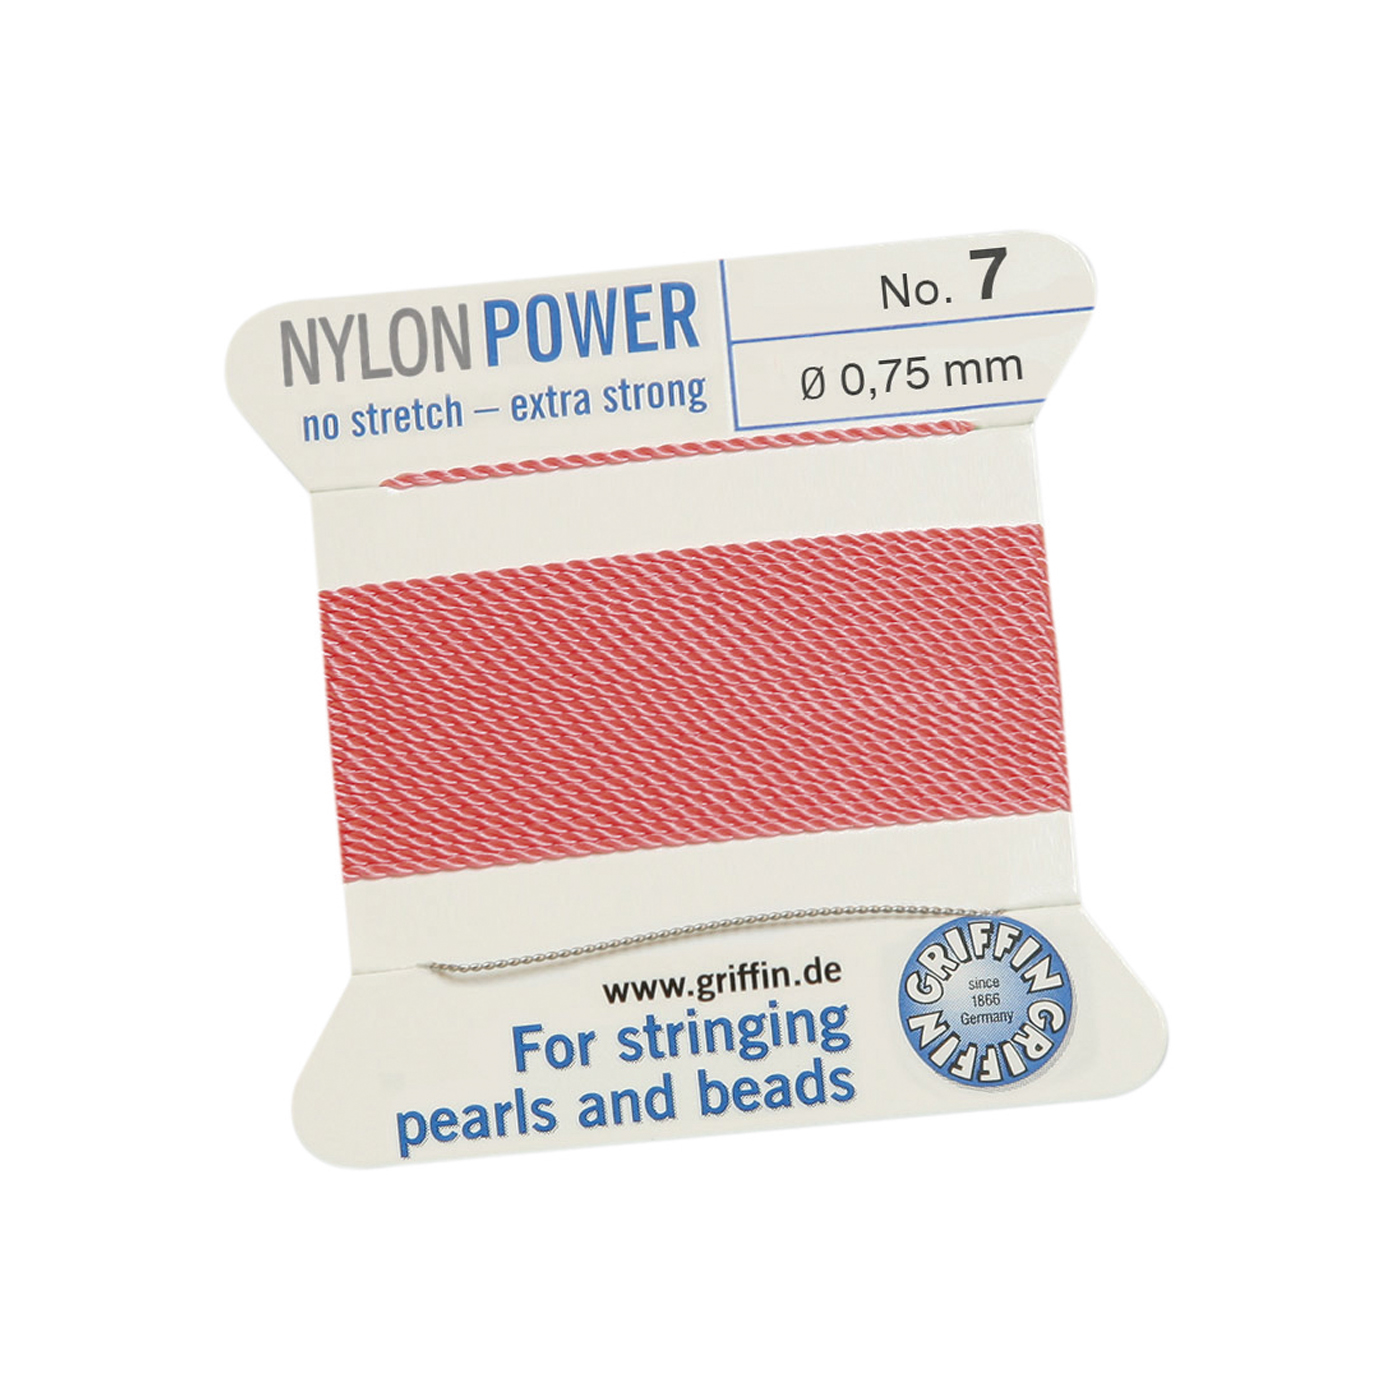 Bead Cord NylonPower, Dark Pink, No. 7 - 2 m